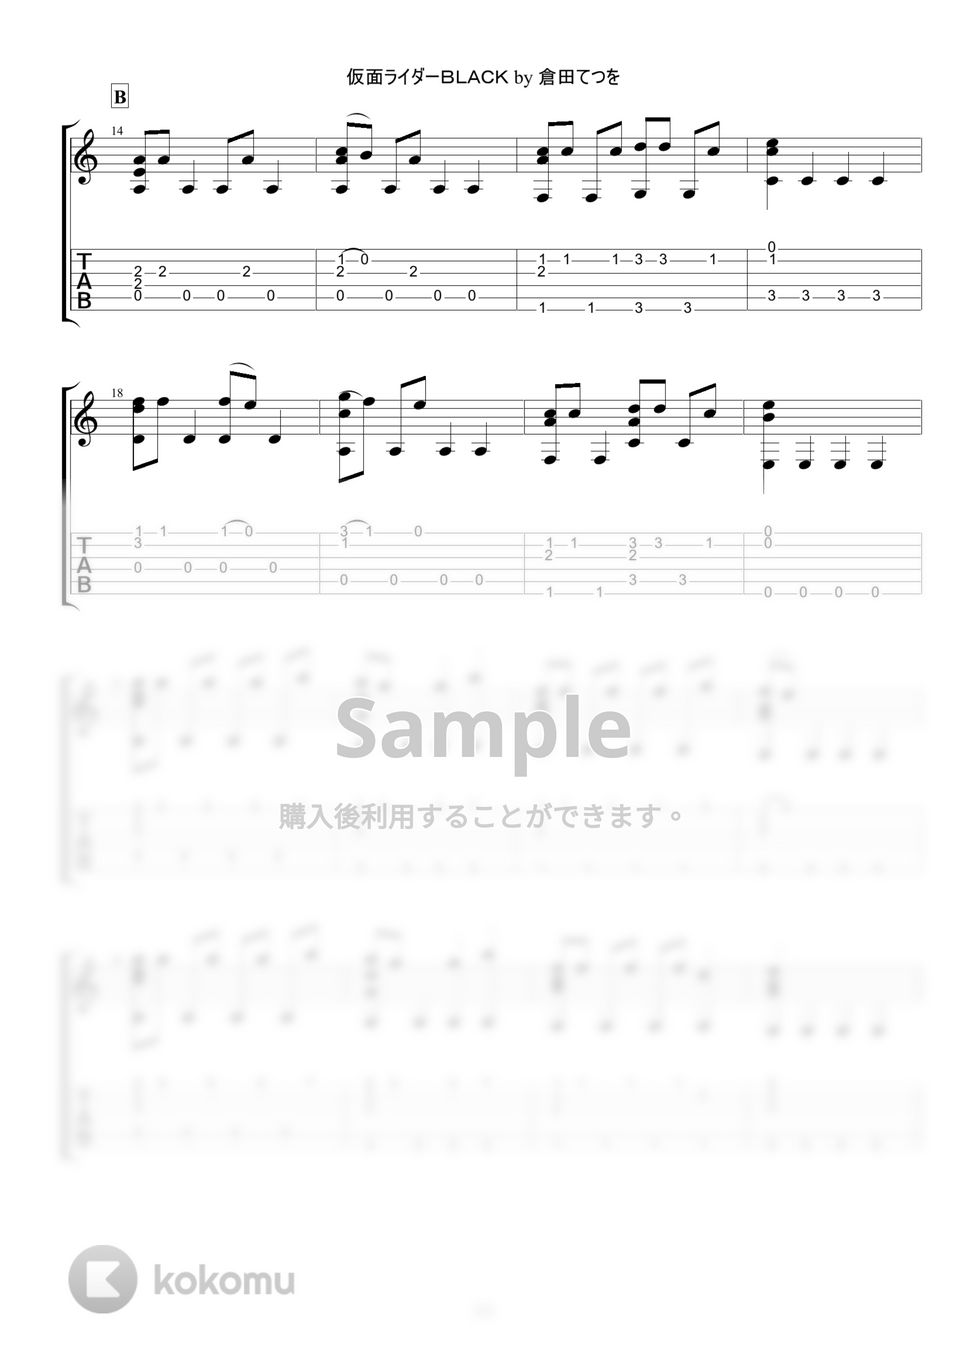 仮面ライダーブラック - 仮面ライダーBLACK (ソロギターアレンジ) by ぎたーきたー